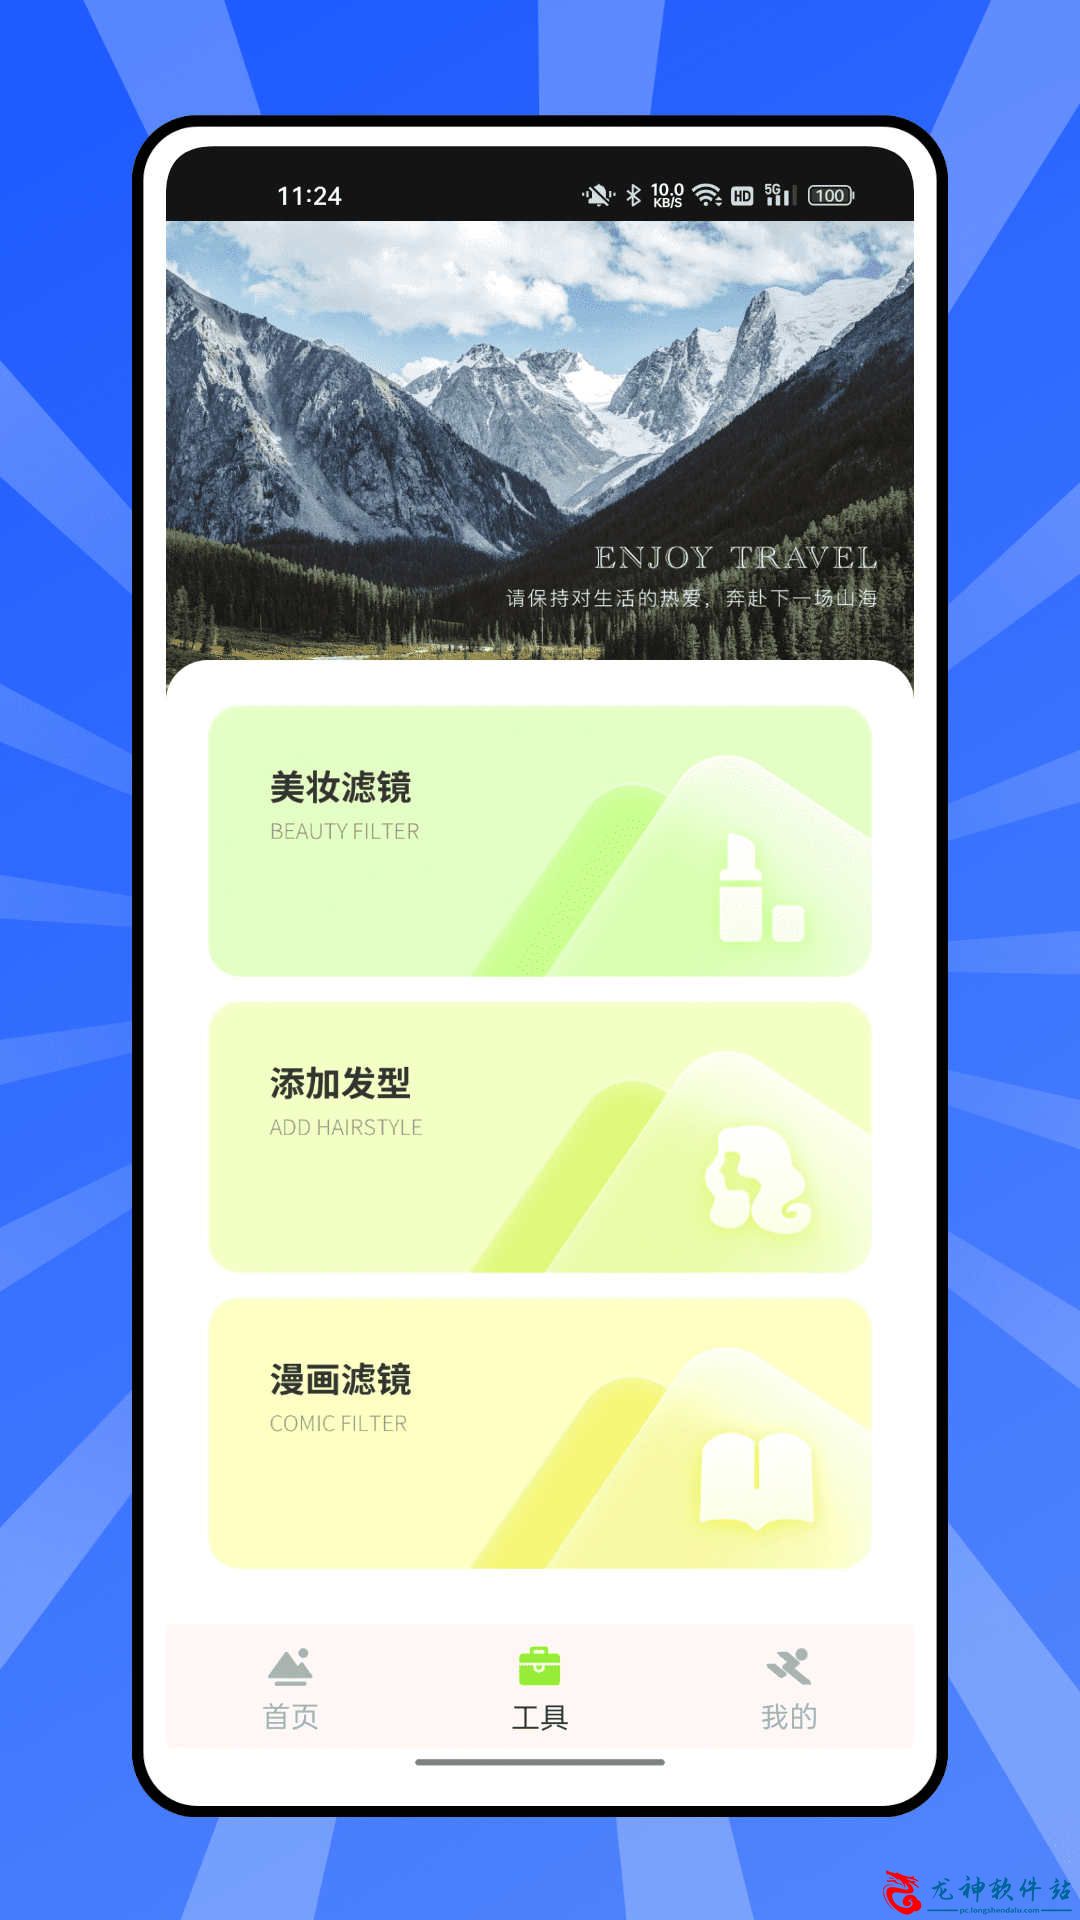 熊猫爱旅行向导最新手机版下载v1.1